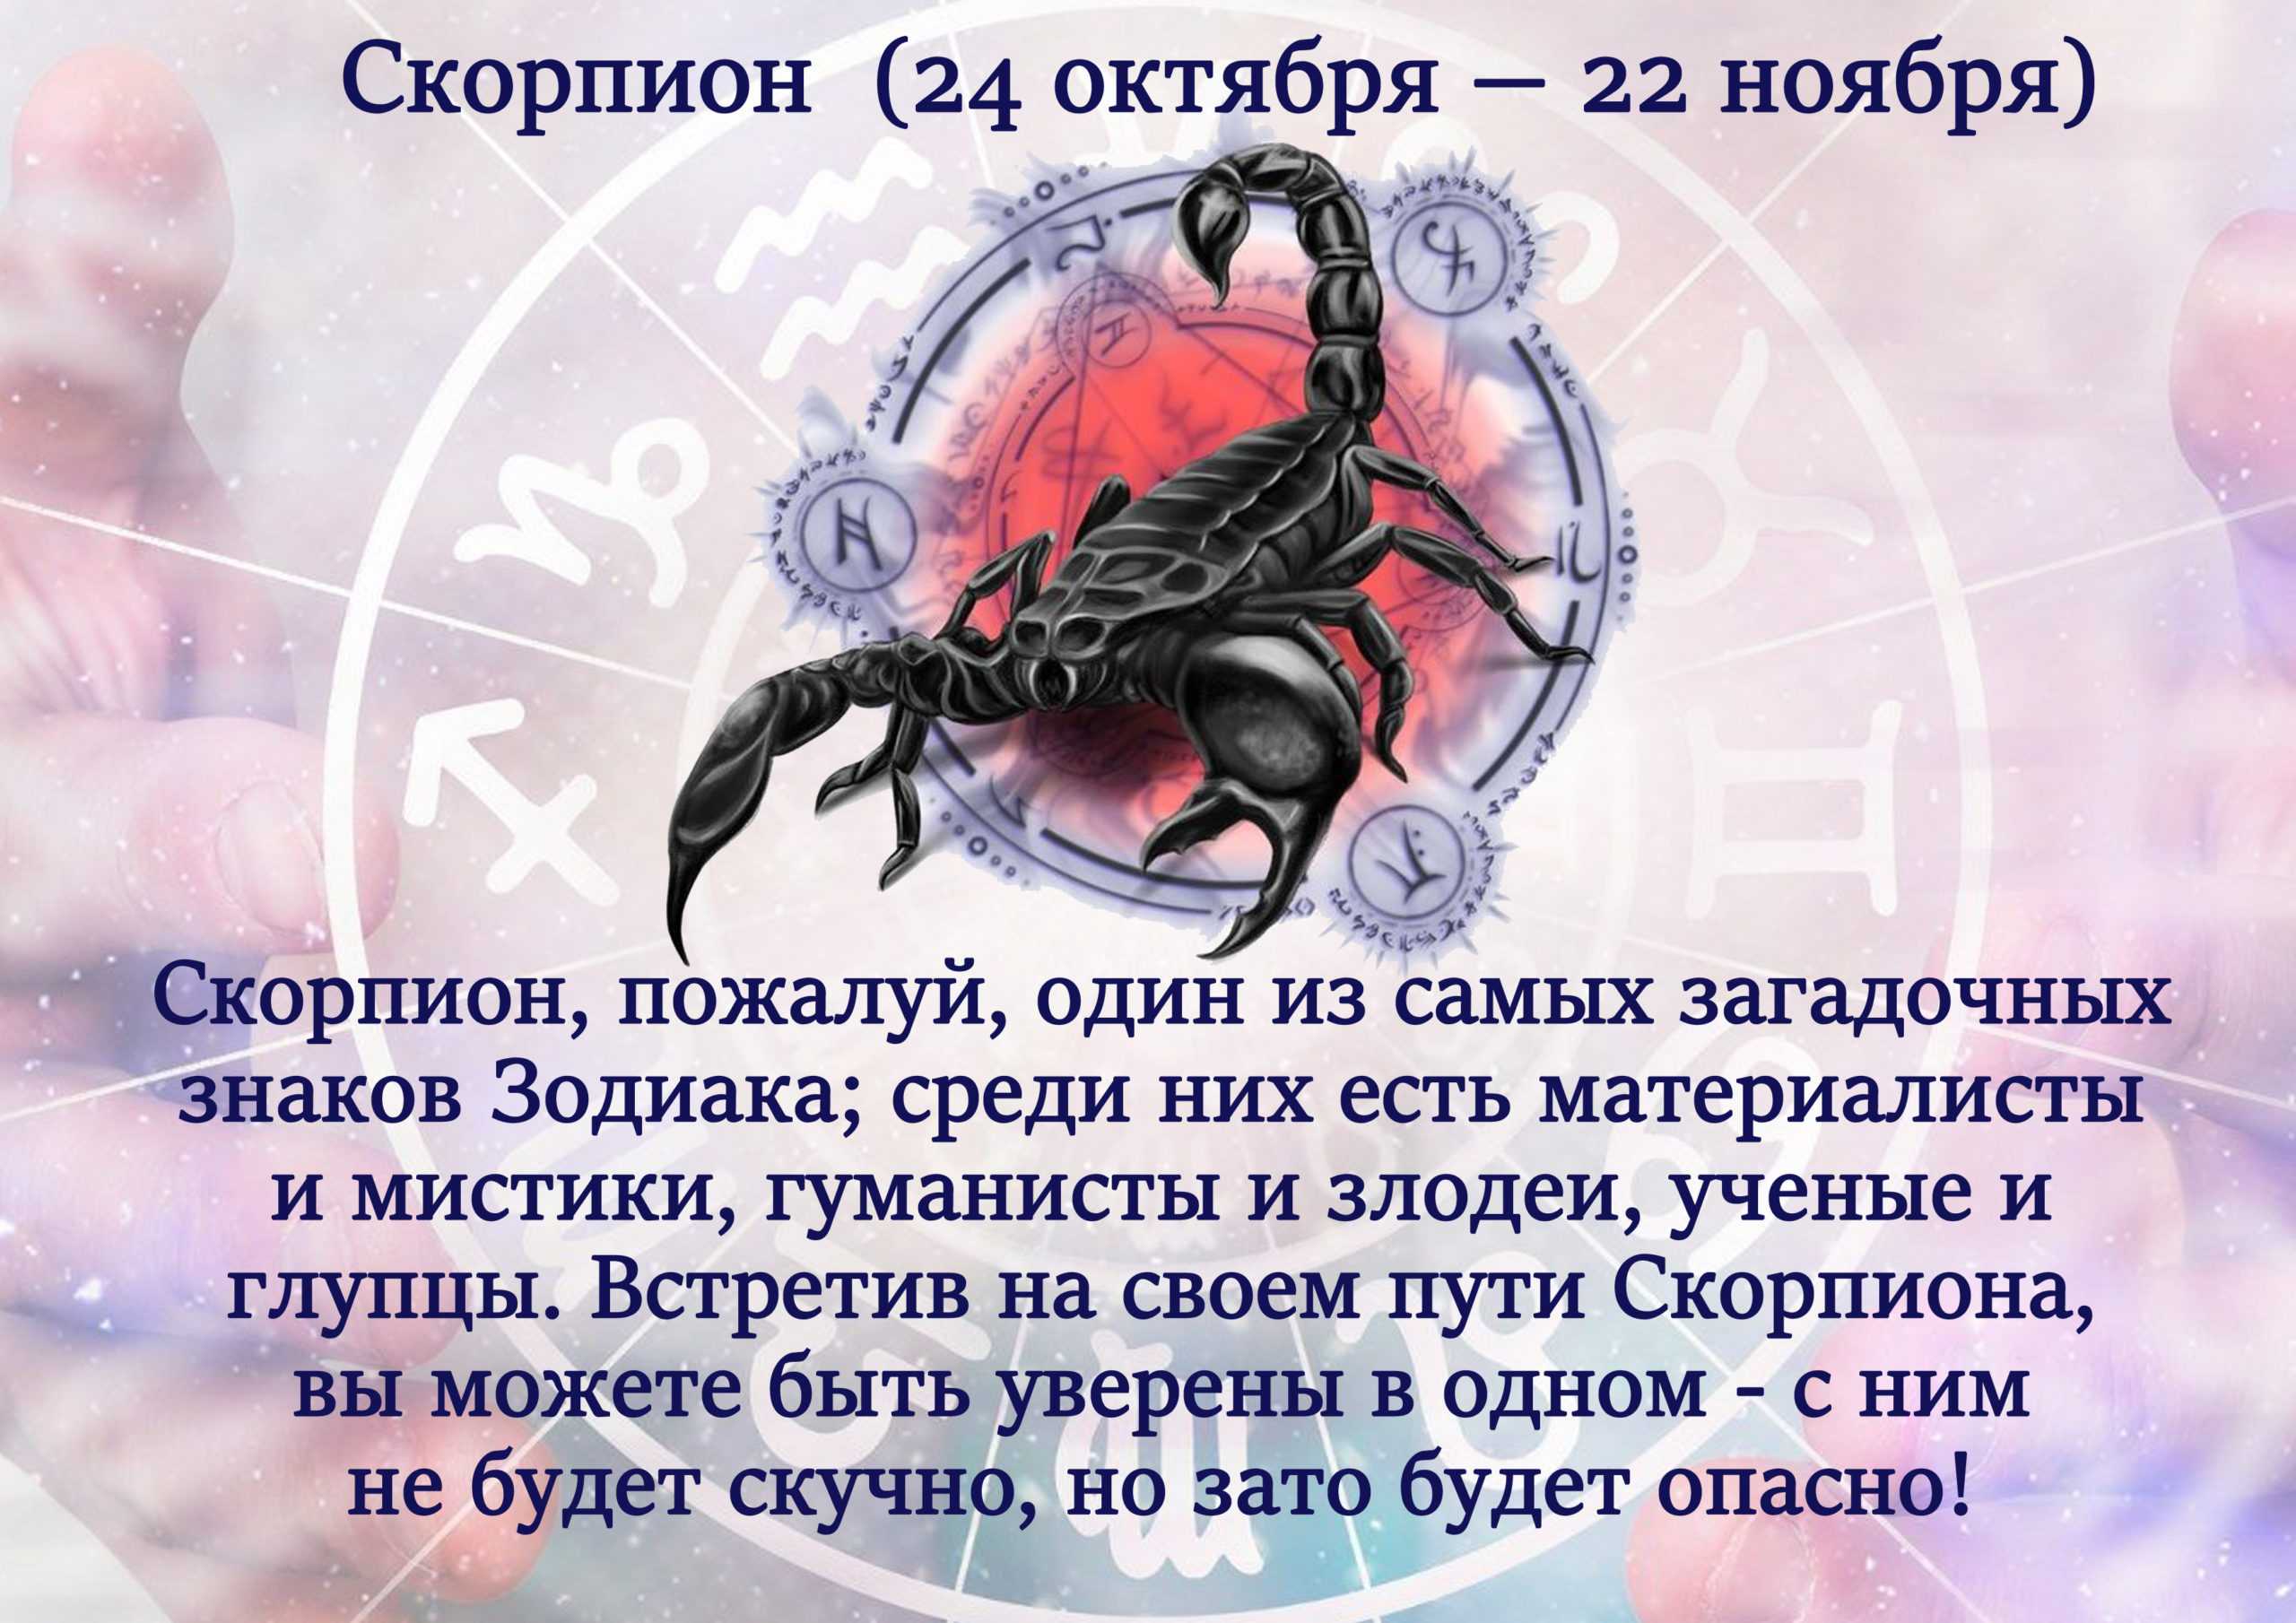 Скорпион! гороскоп на октябрь 2021 года для скорпионов